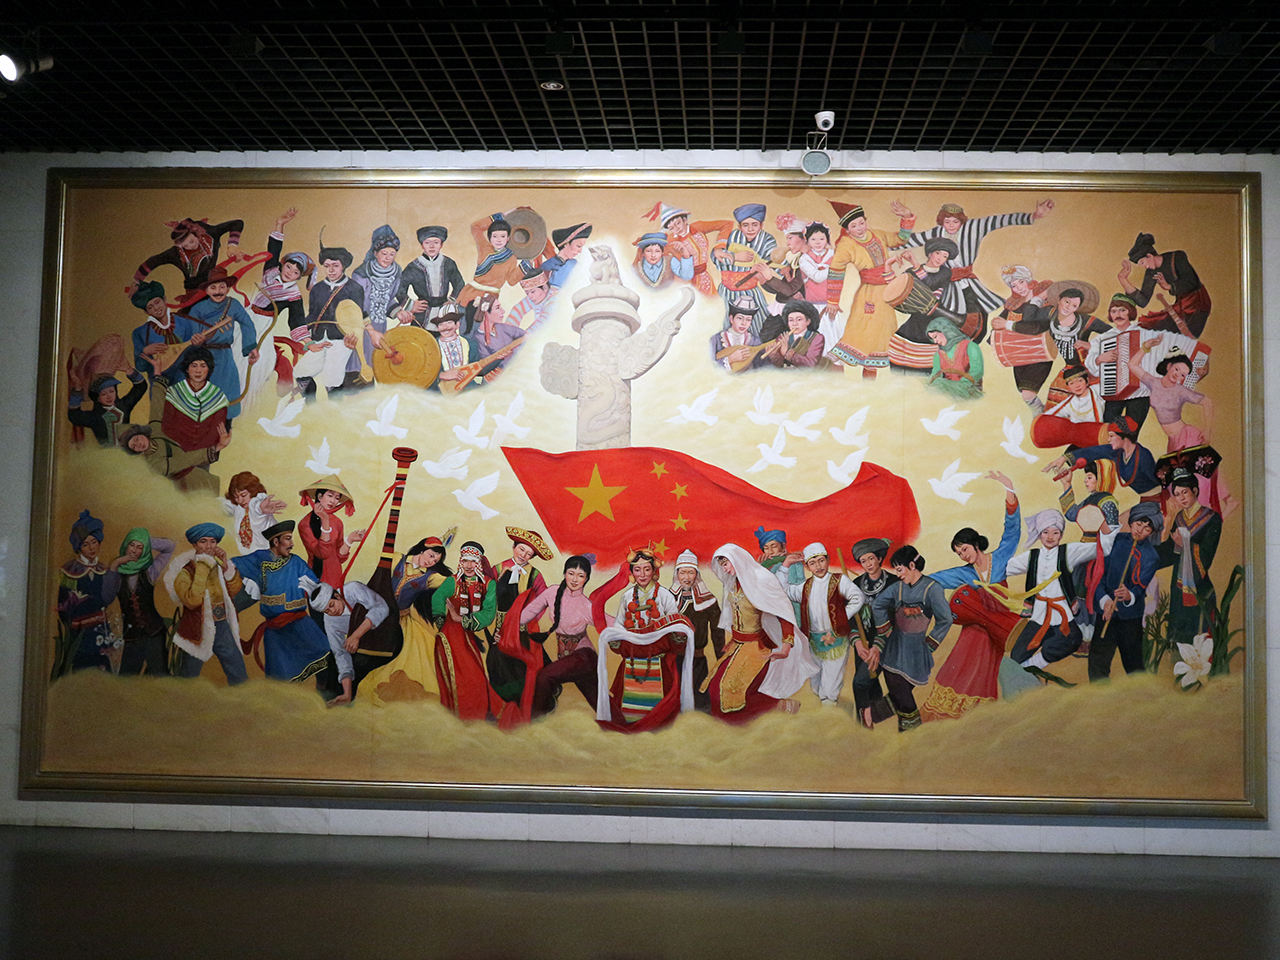  중국 56개 민족이 들어간 그림이 전시되어 있었다. 조선족은 한복을 입은 여성이 장구를 치면서 춤을 추는 모습이다.